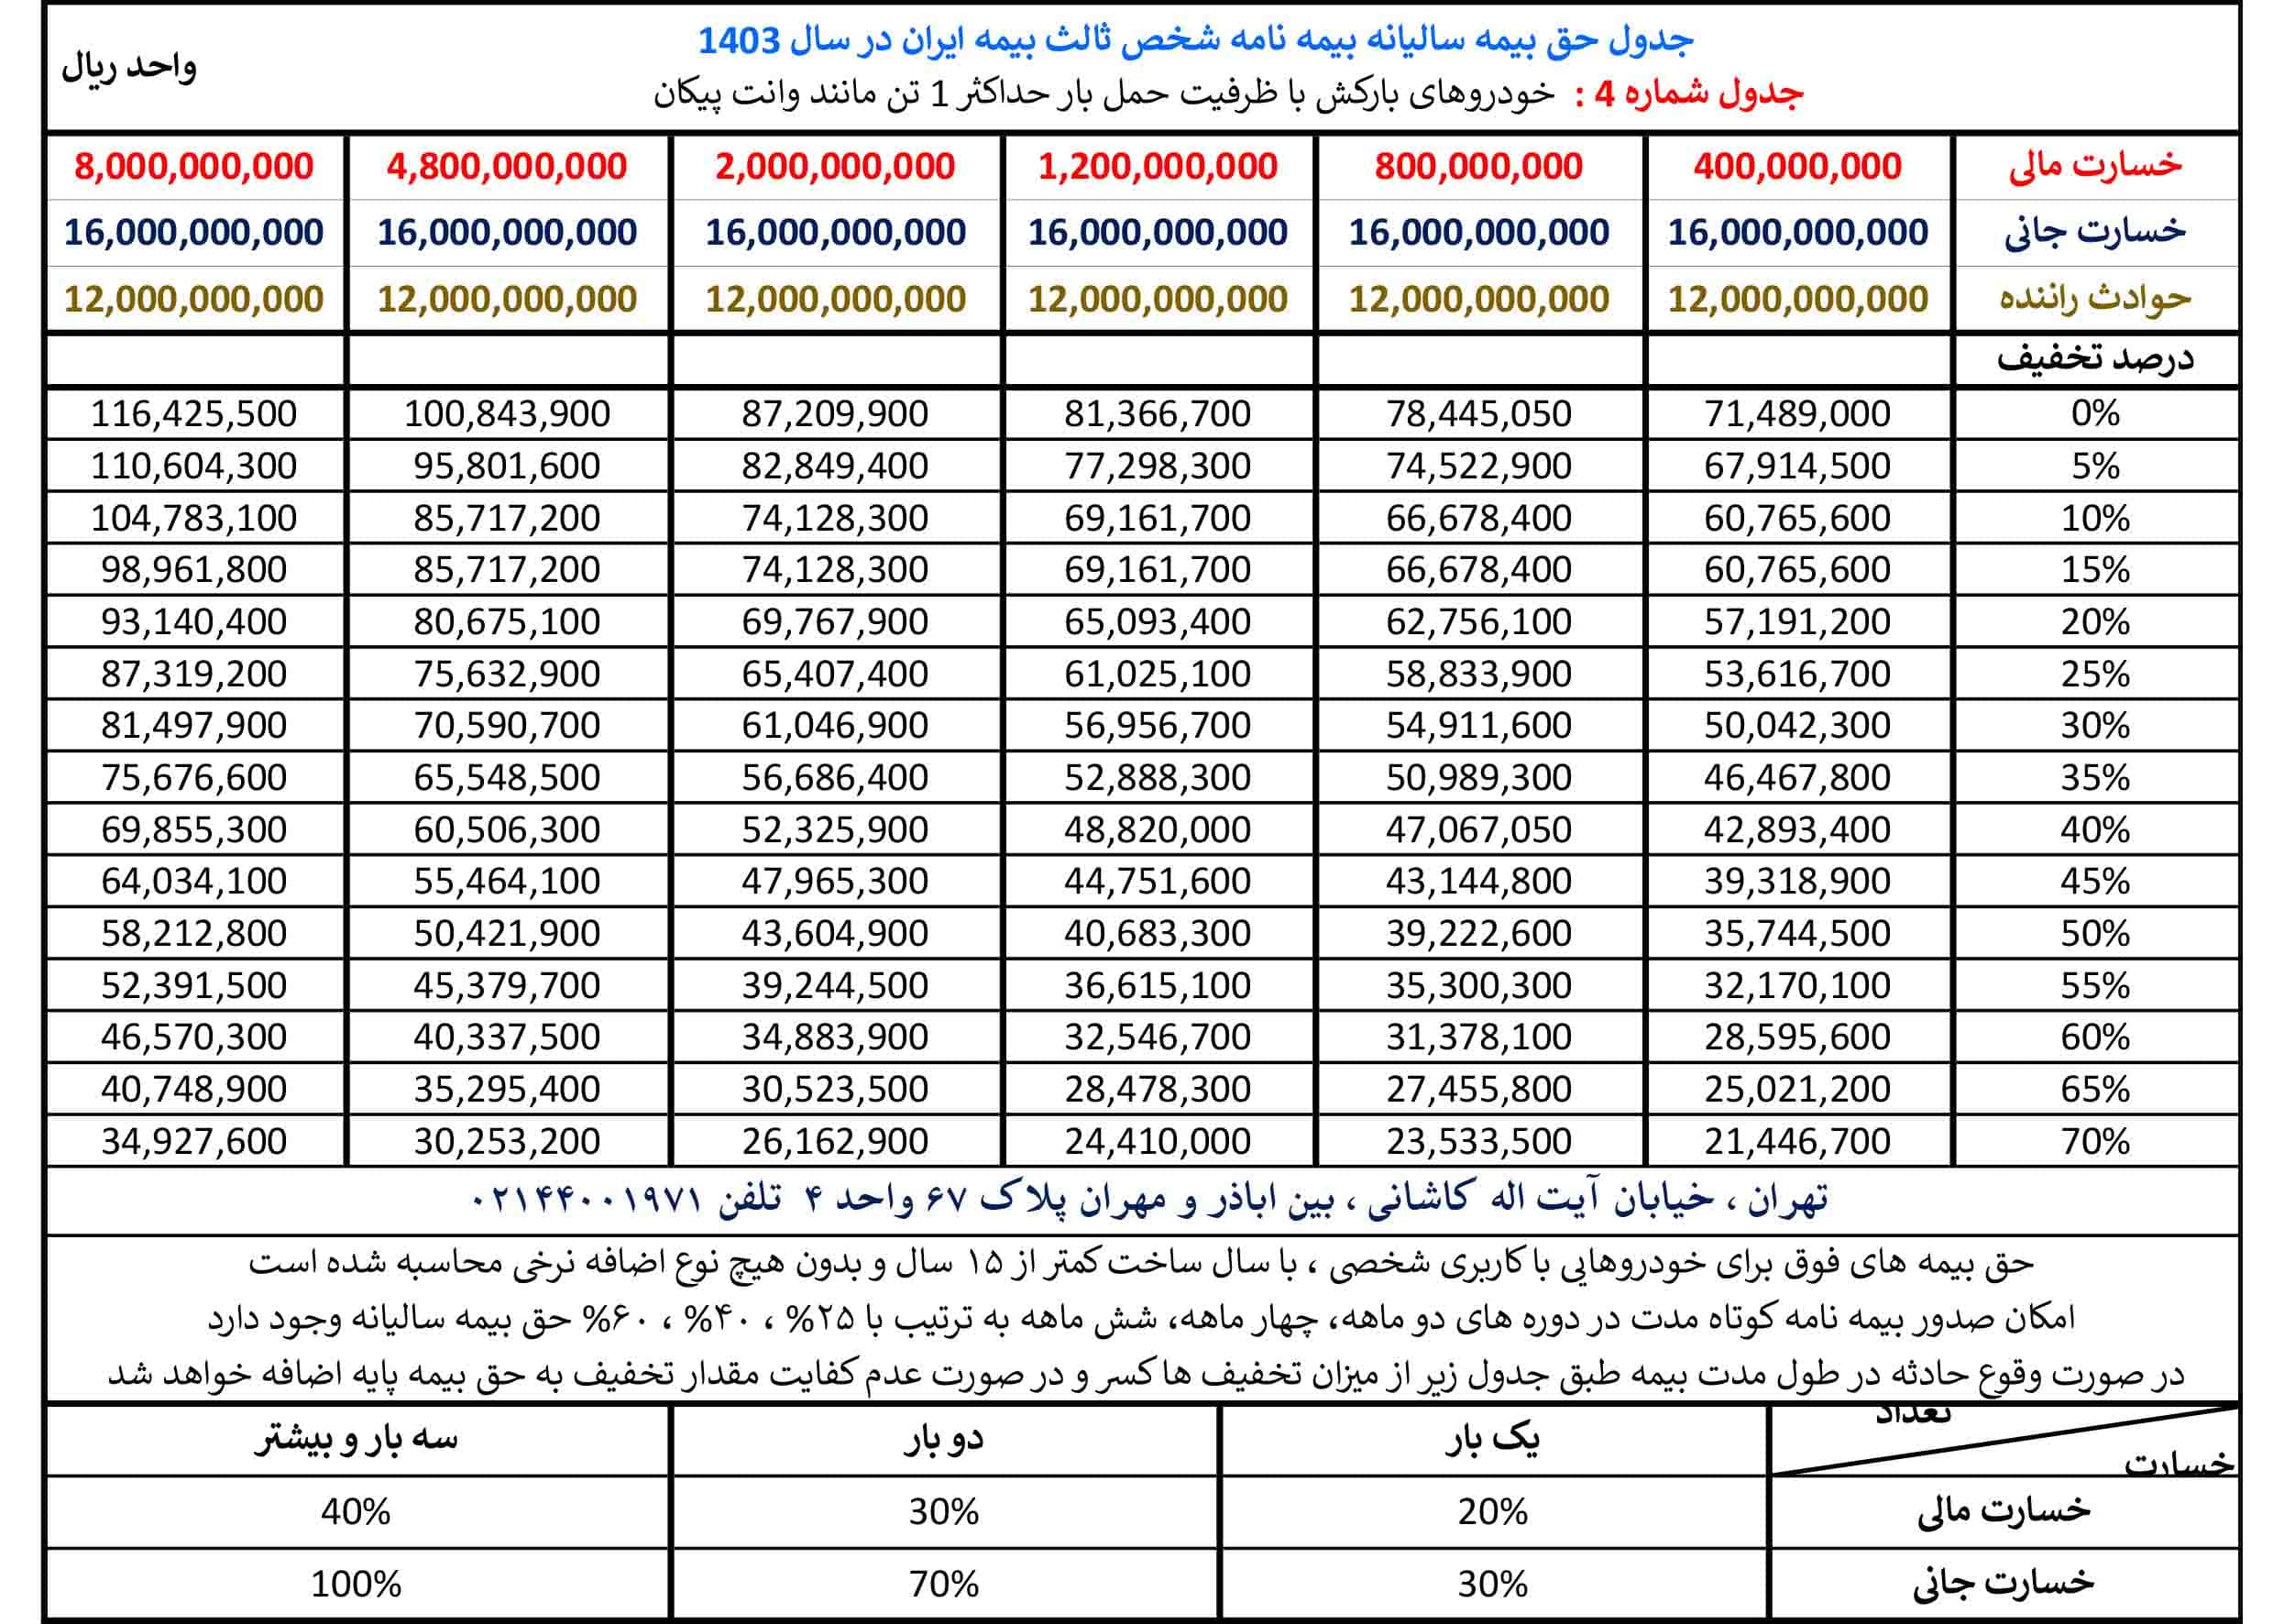 جدول حق بیمه بیمه شخص ثالث بیمه ایران در سال 1403 مربوط به گروه بارکش ها با ظرفیت کمتر از یک تن